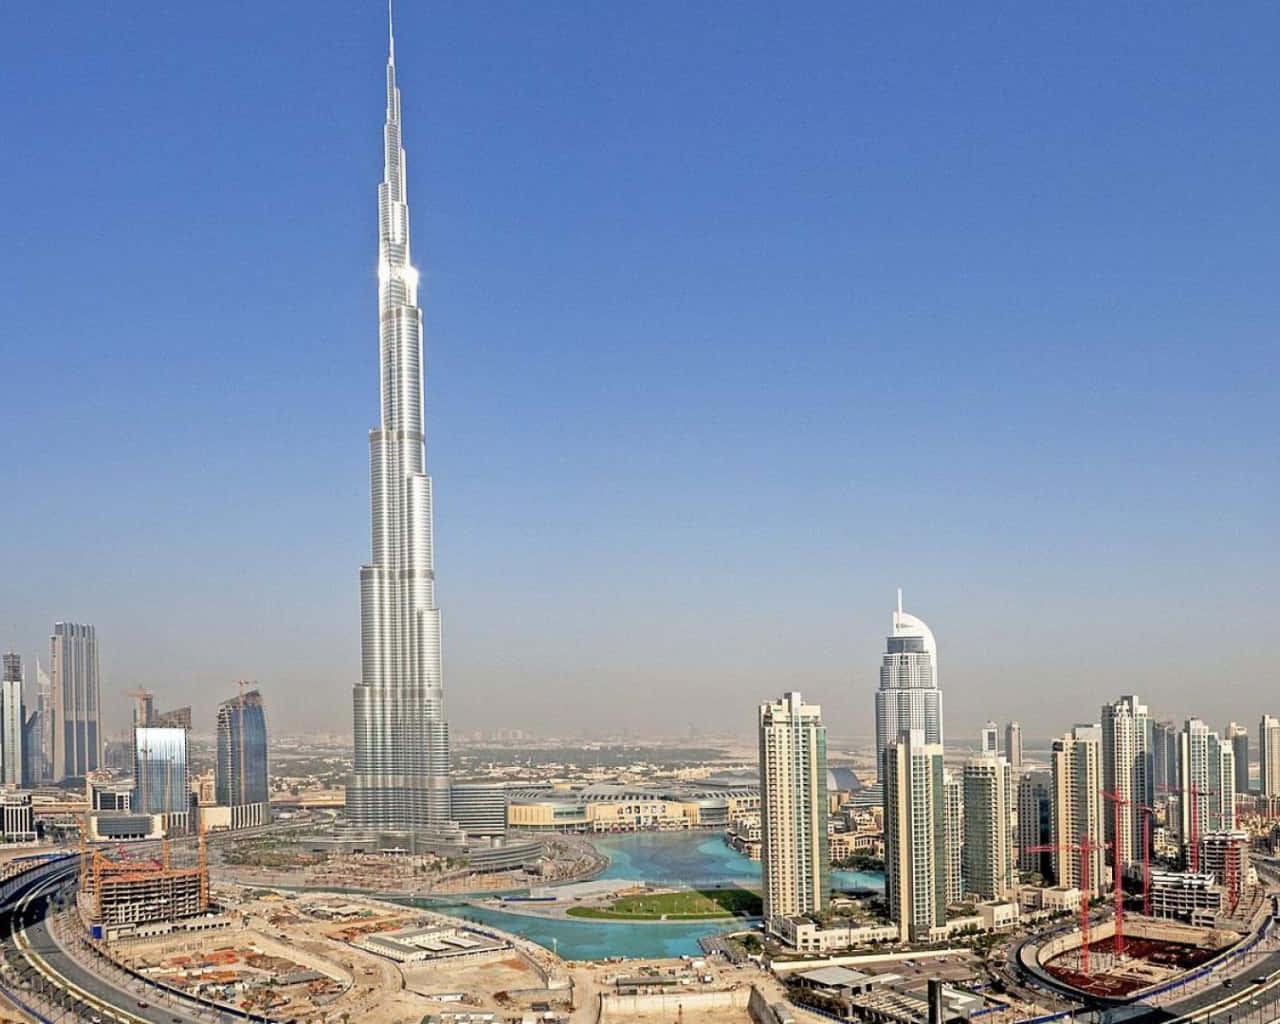 Ilmaestoso Burj Khalifa Domina L'orizzonte Di Dubai